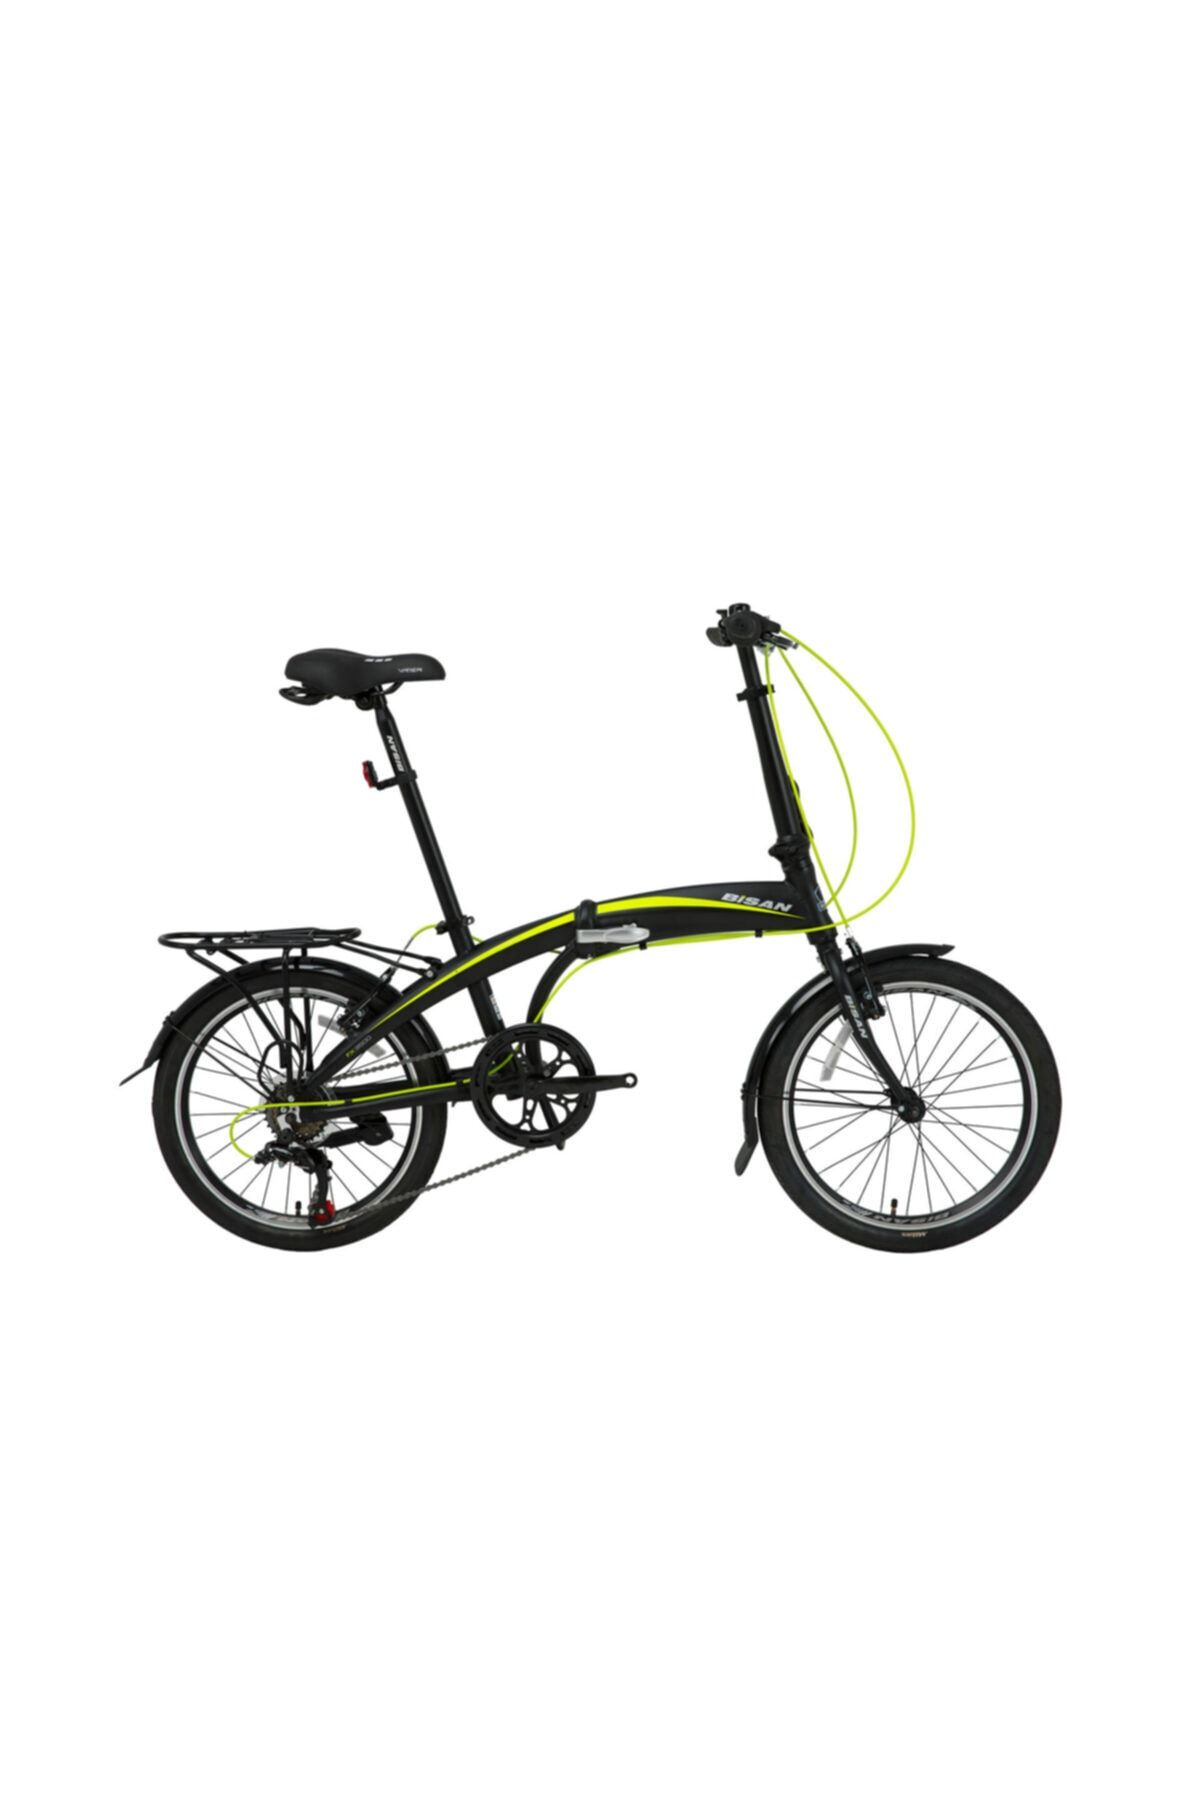 Bisan Fx 3500 Trn 2021 Katlanır Bisiklet - Lime